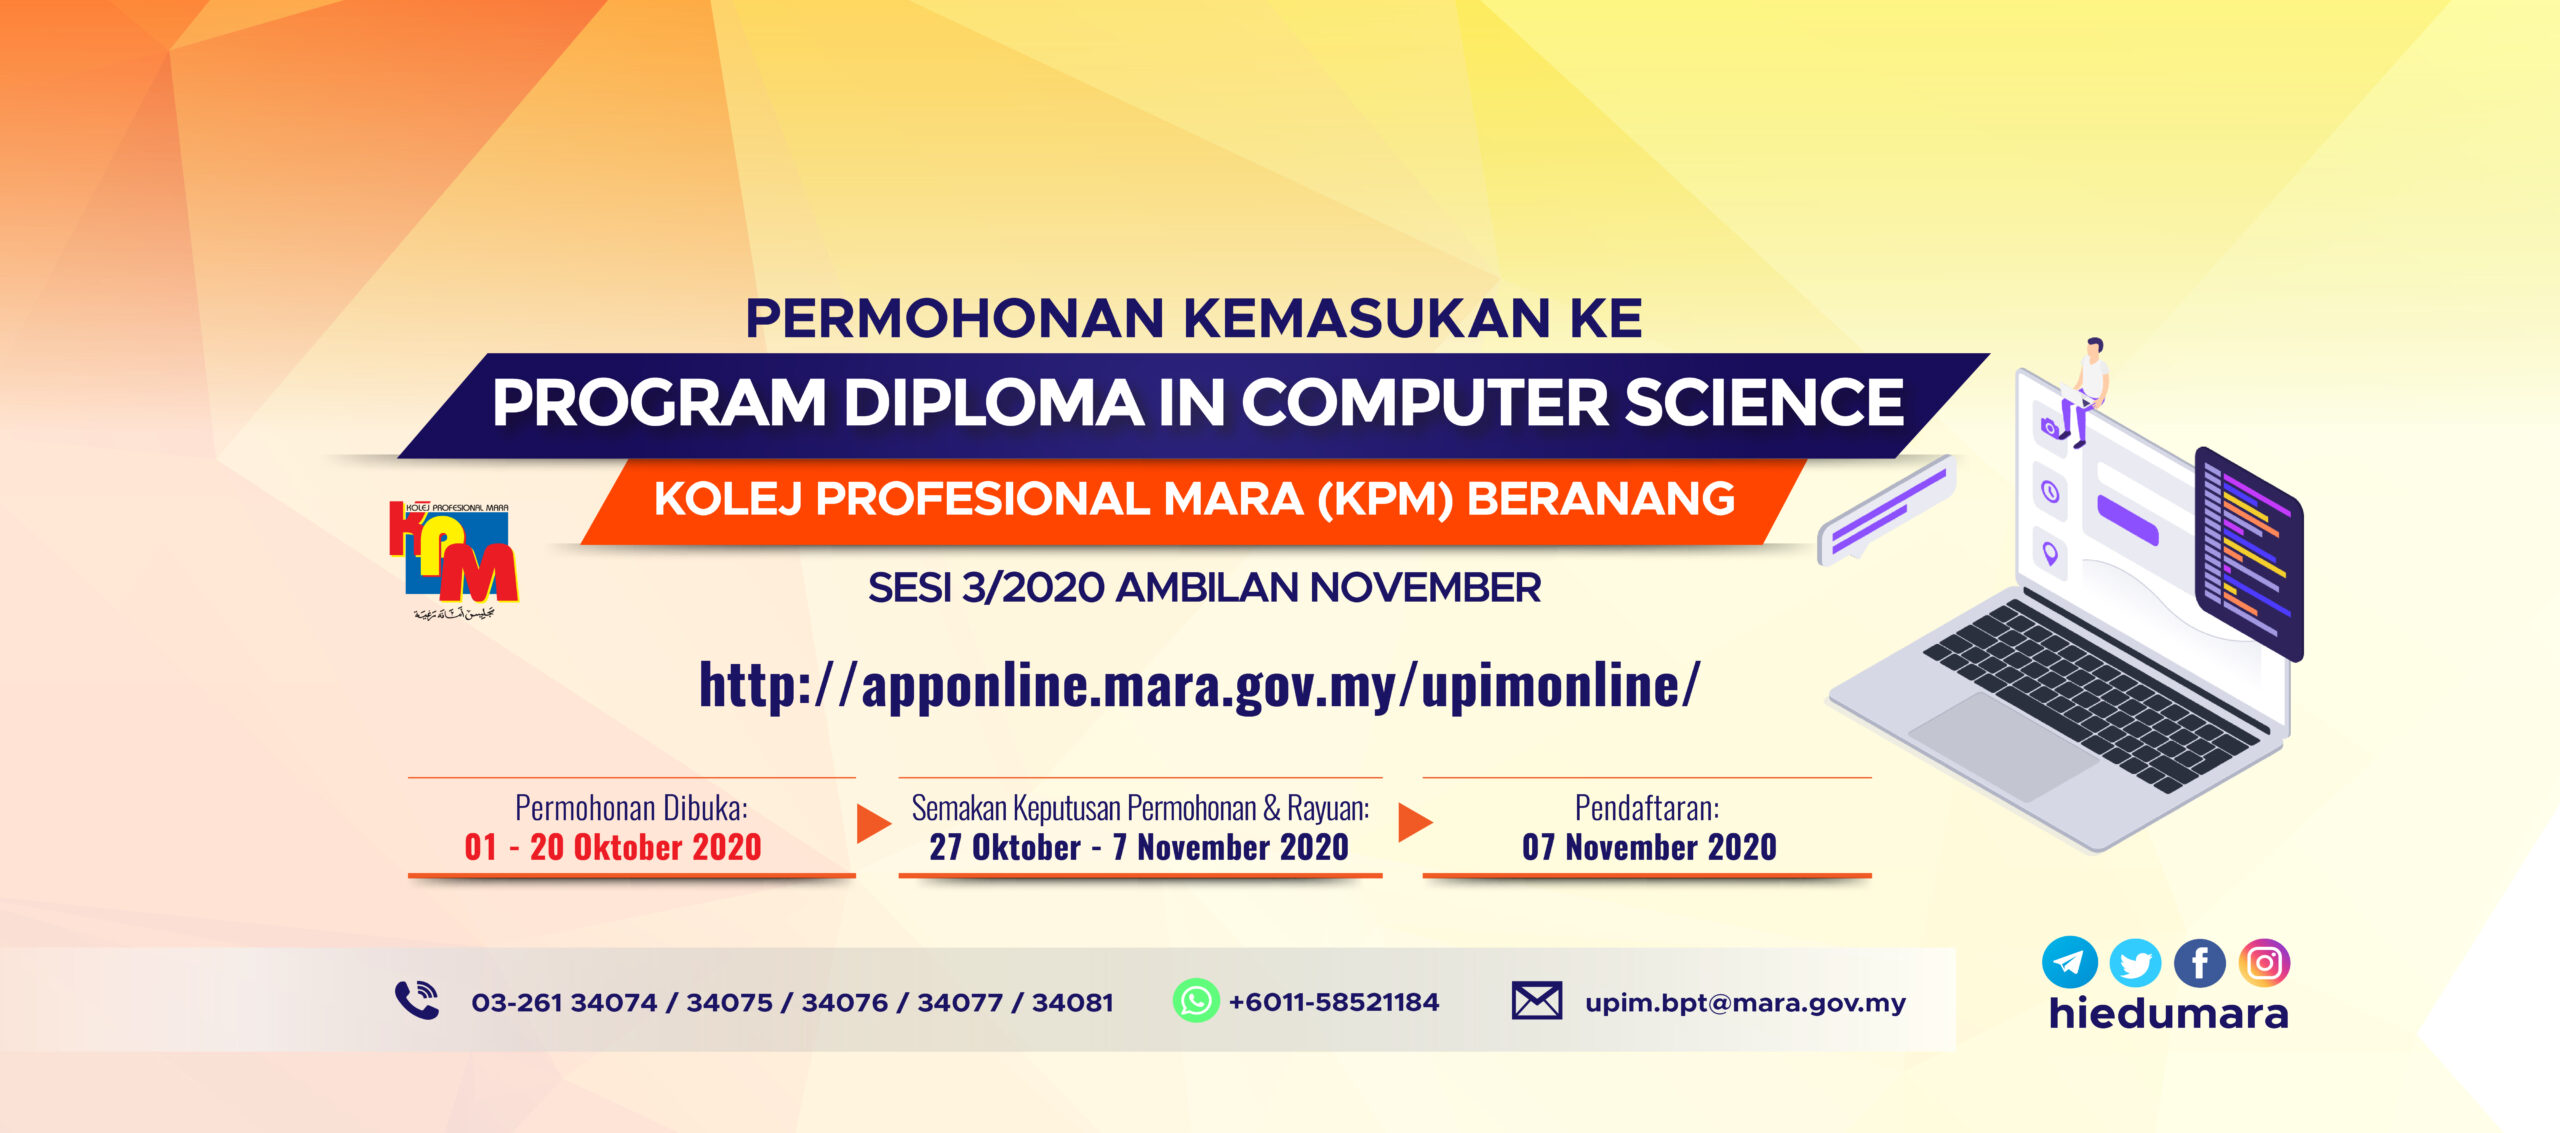 Permohonan Program Diploma In Computer Science Sesi 3 2020 Ambilan November Ke Kolej Profesional Mara Kpm Beranang Majlis Amanah Rakyat